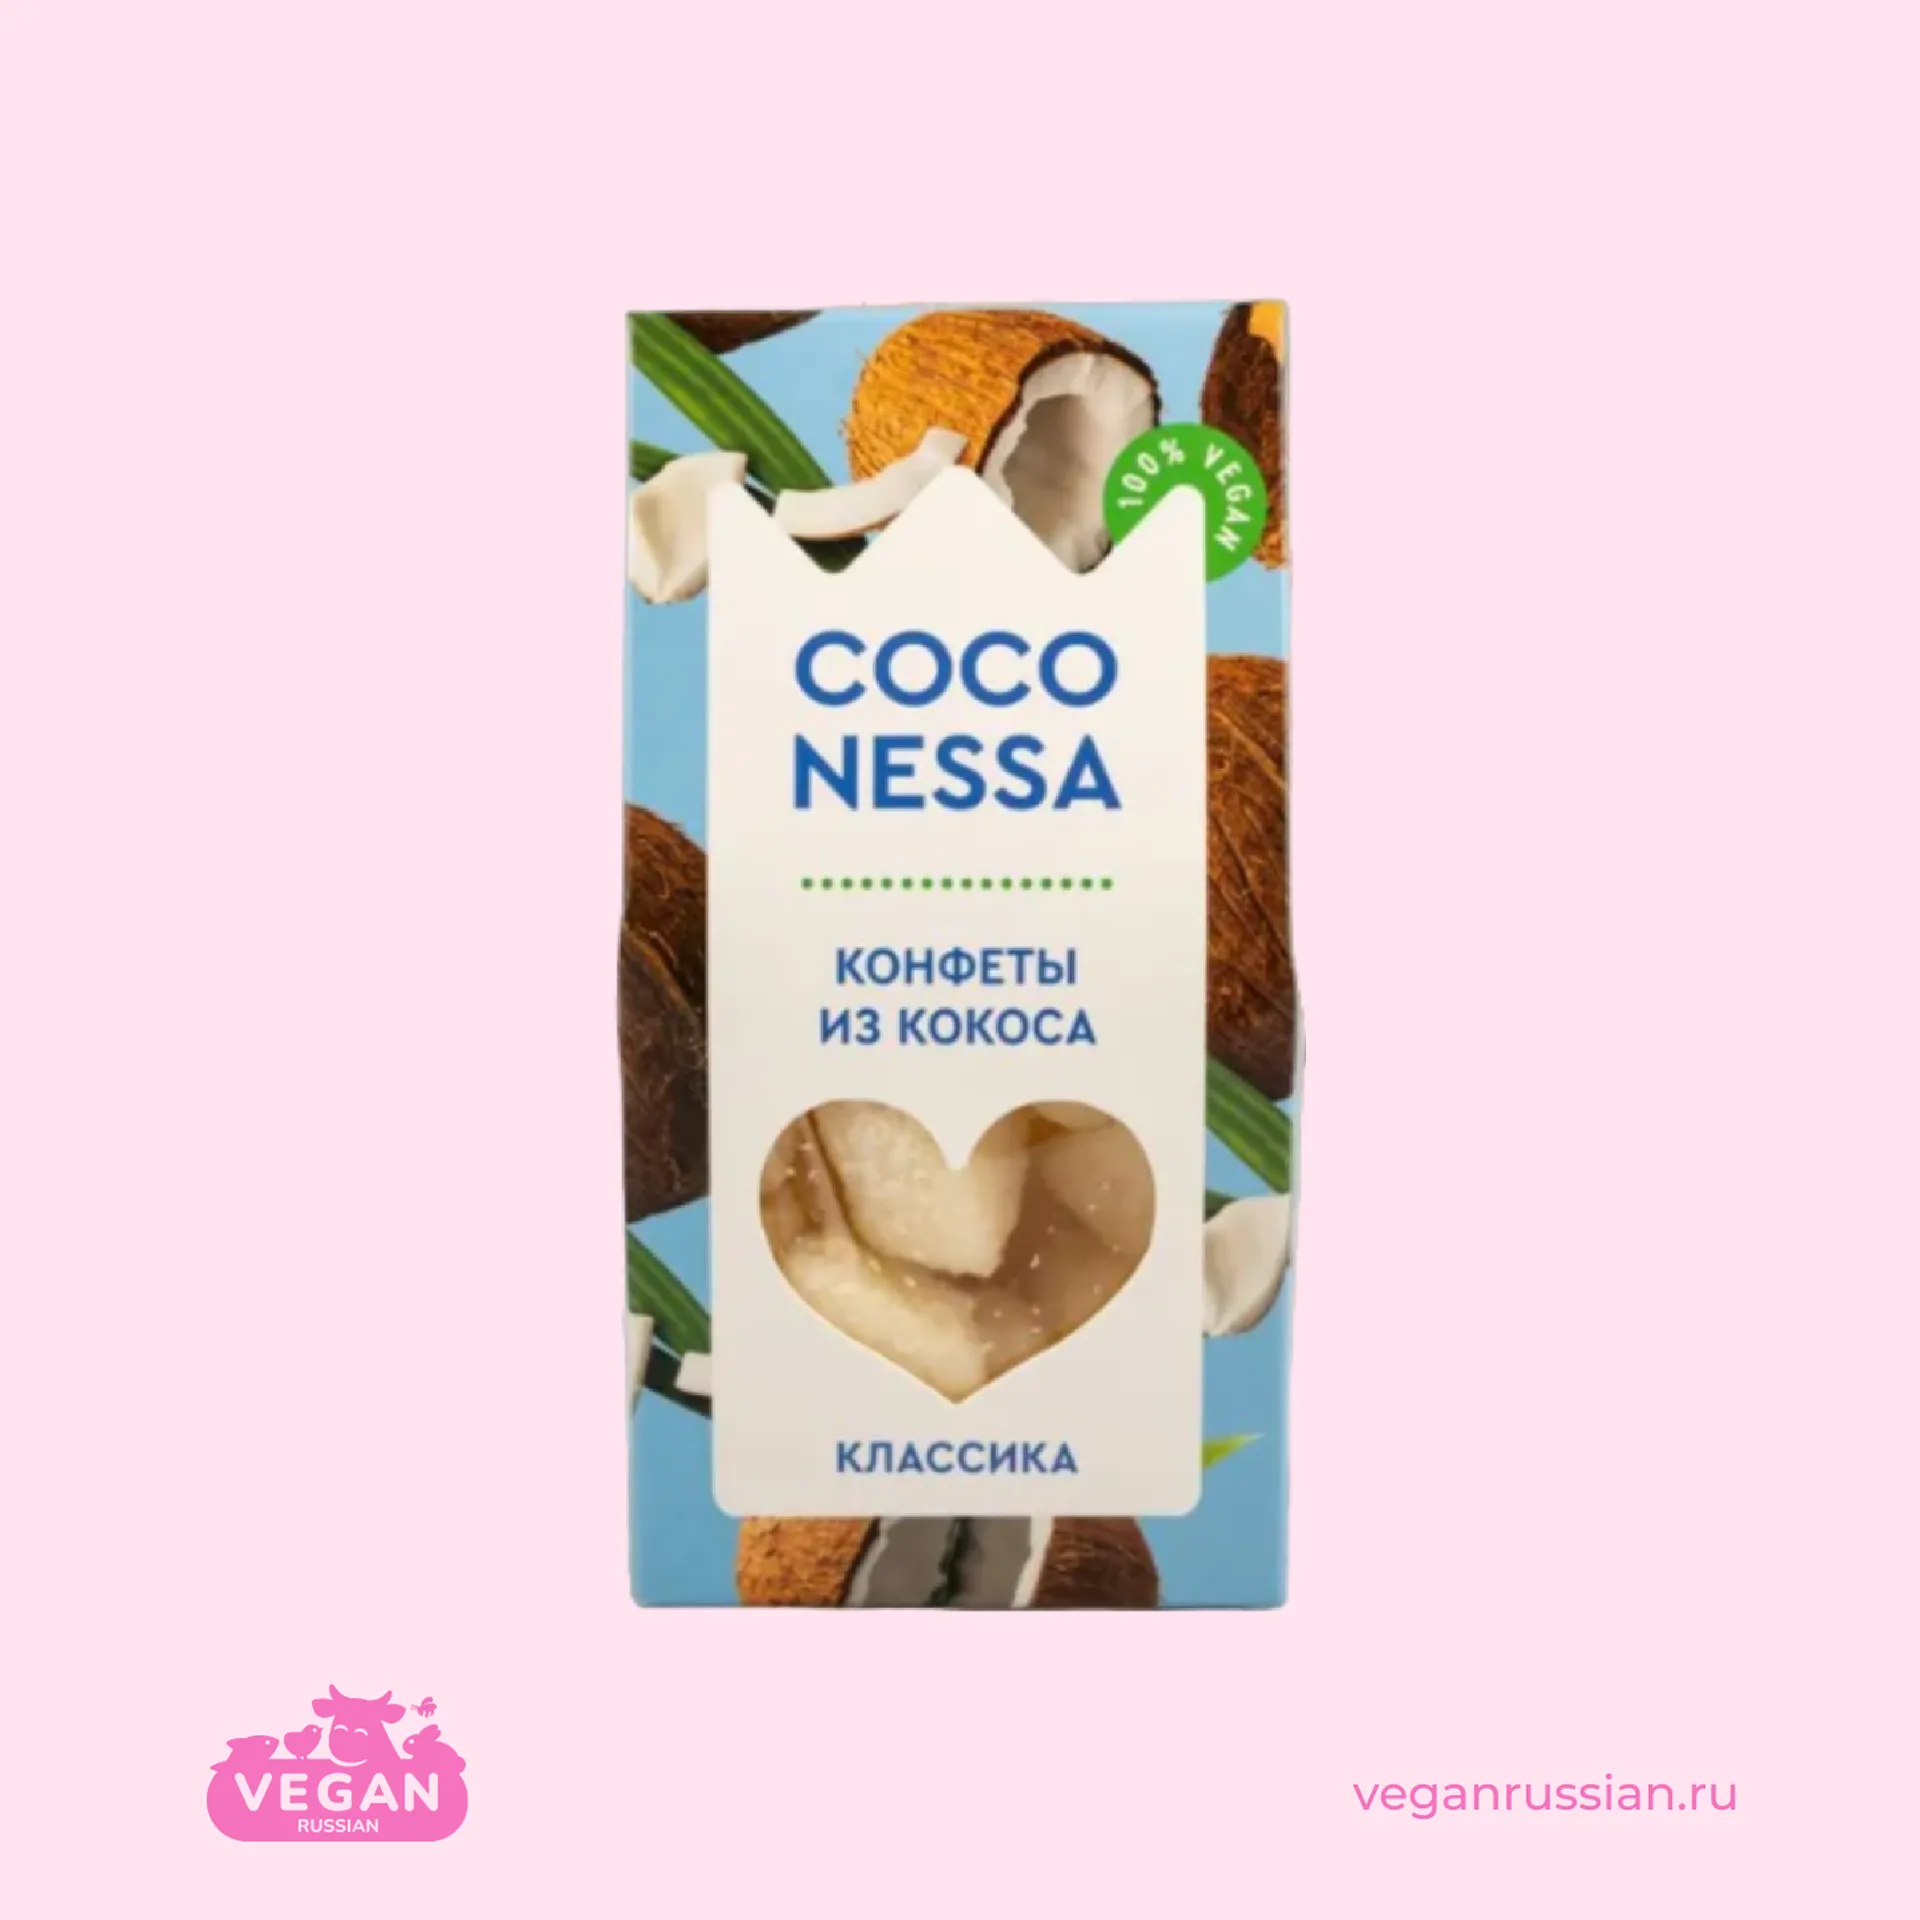 Кокосовые конфеты Классика Coconessa 90 г